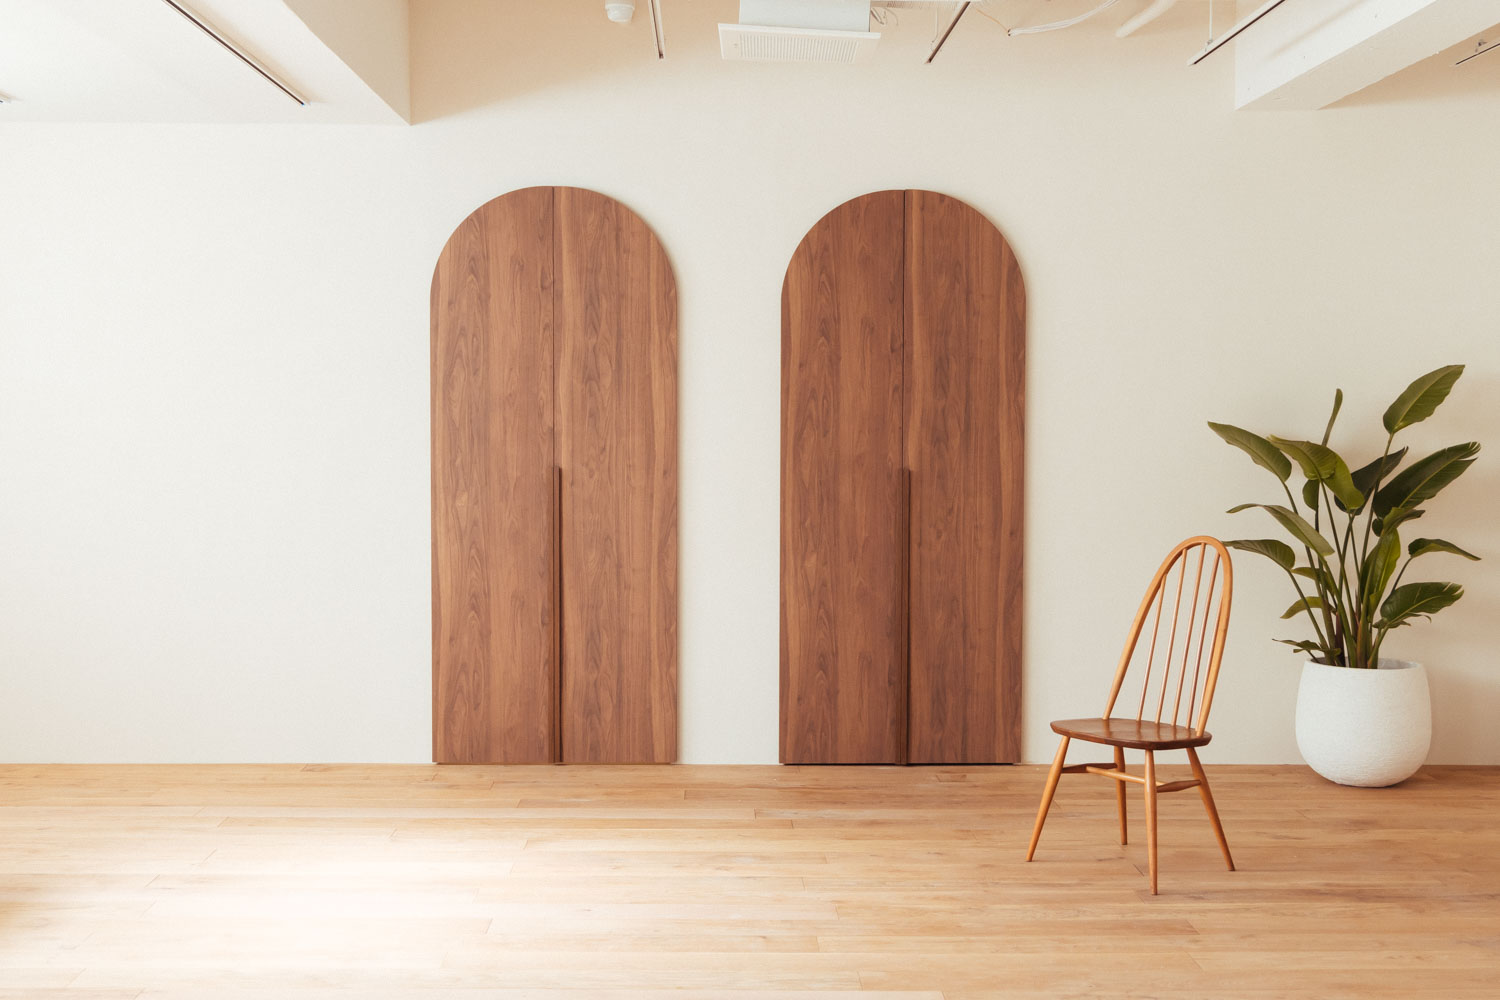 円形の木製ドア2枚があるフローリングの部屋に、アーコールチェアと観葉植物が配置された写真